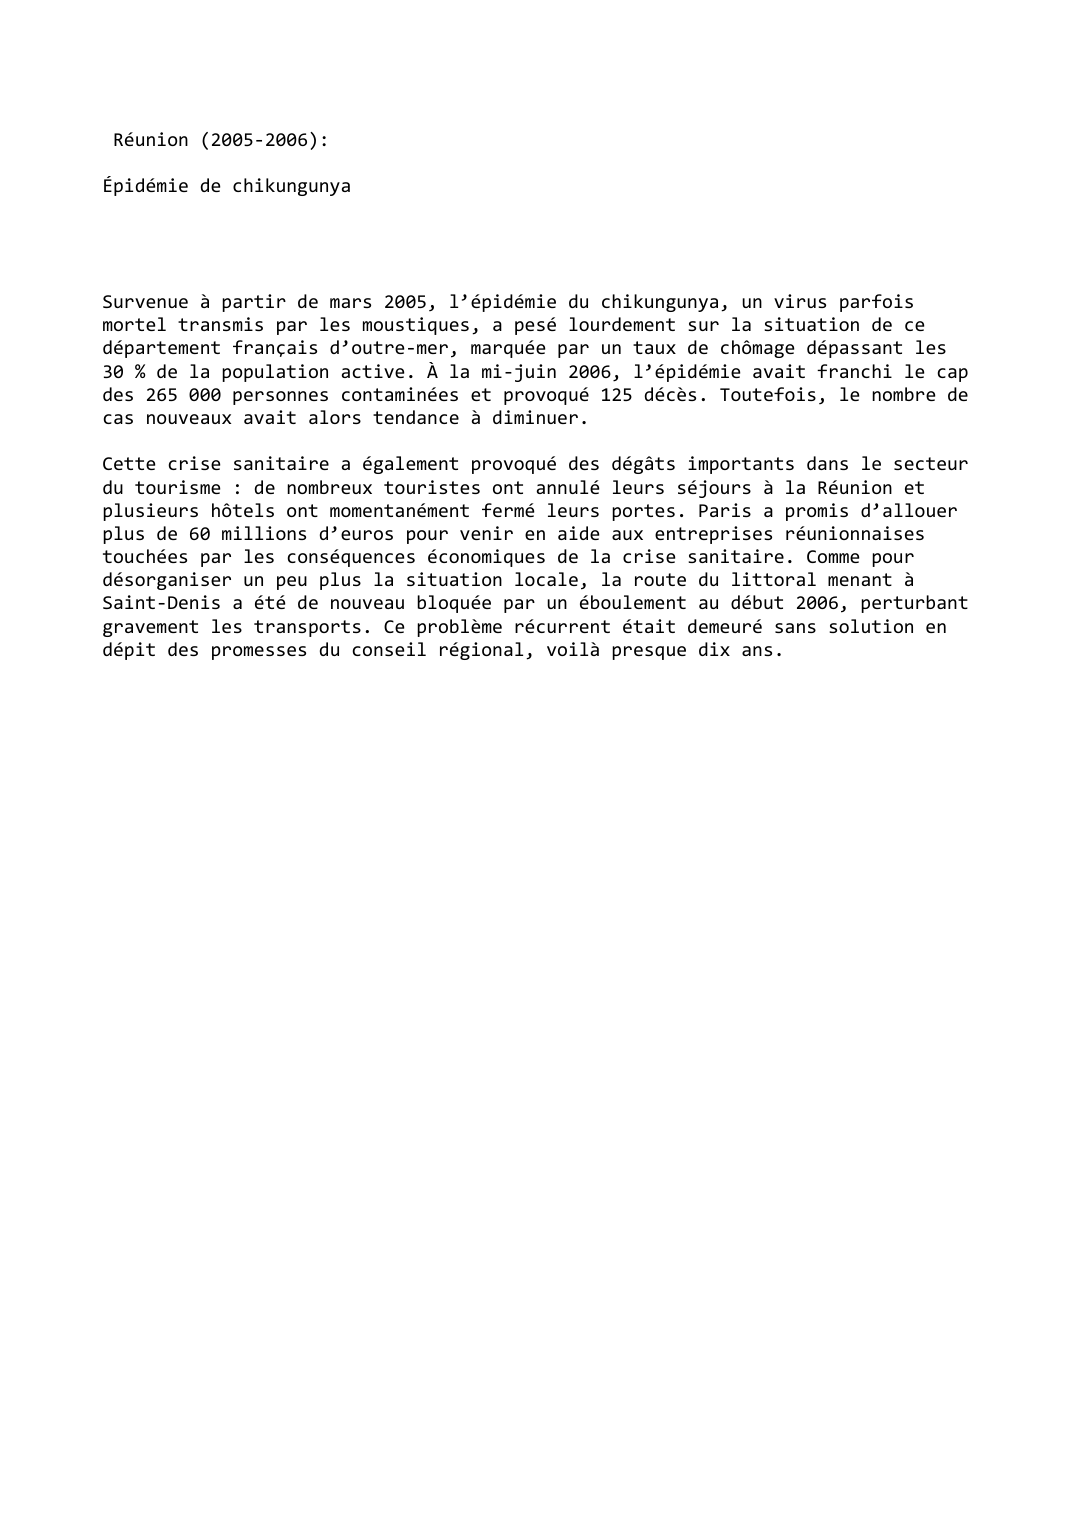 Prévisualisation du document Réunion (2005-2006):

Épidémie de chikungunya